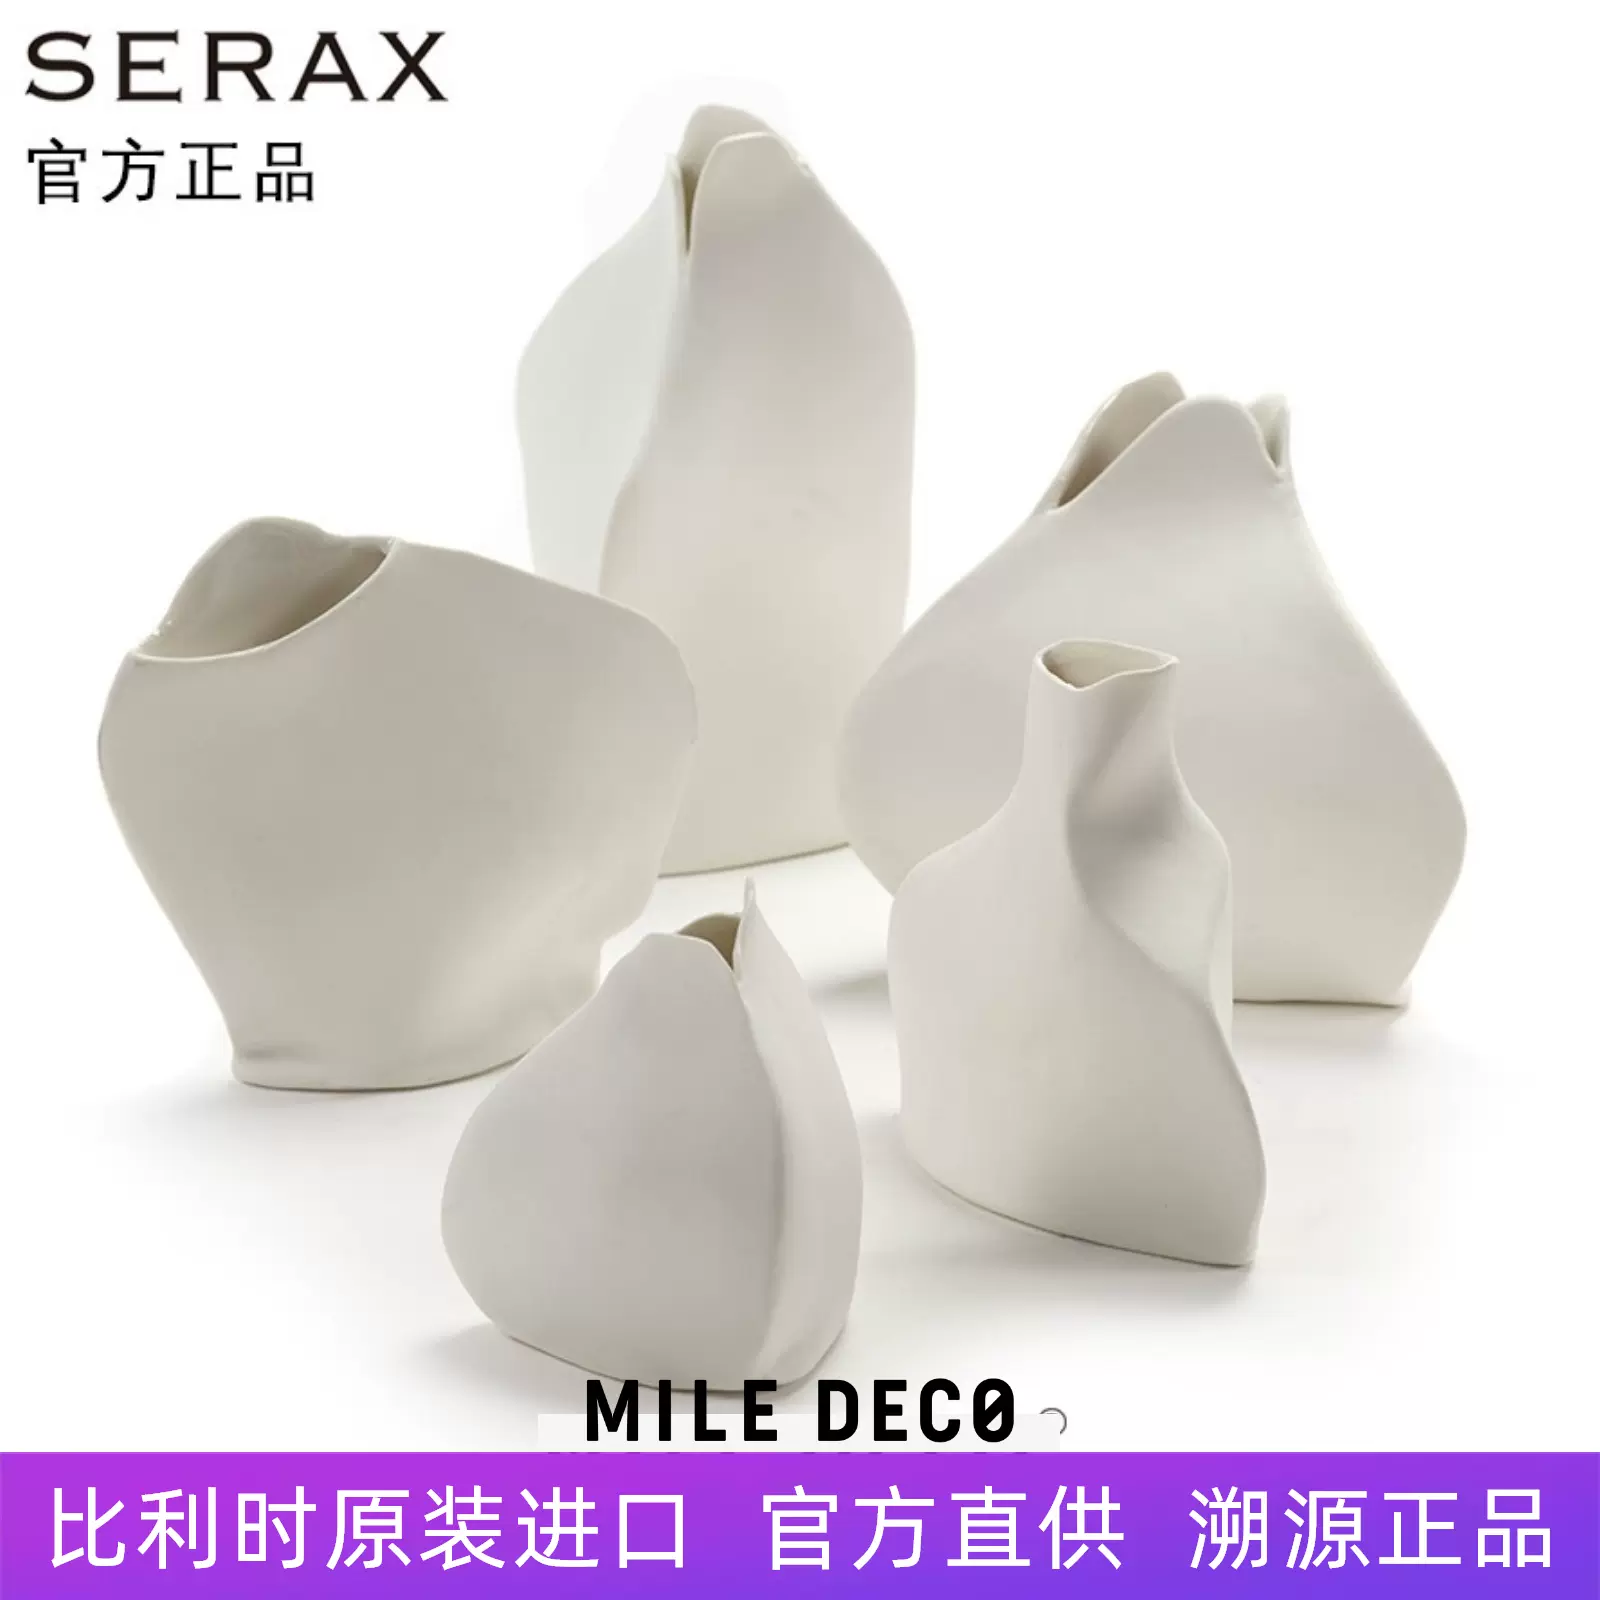 安特卫普Roos van de Velde比利时进口SERAX艺术陶瓷迷你花瓶花器-Taobao